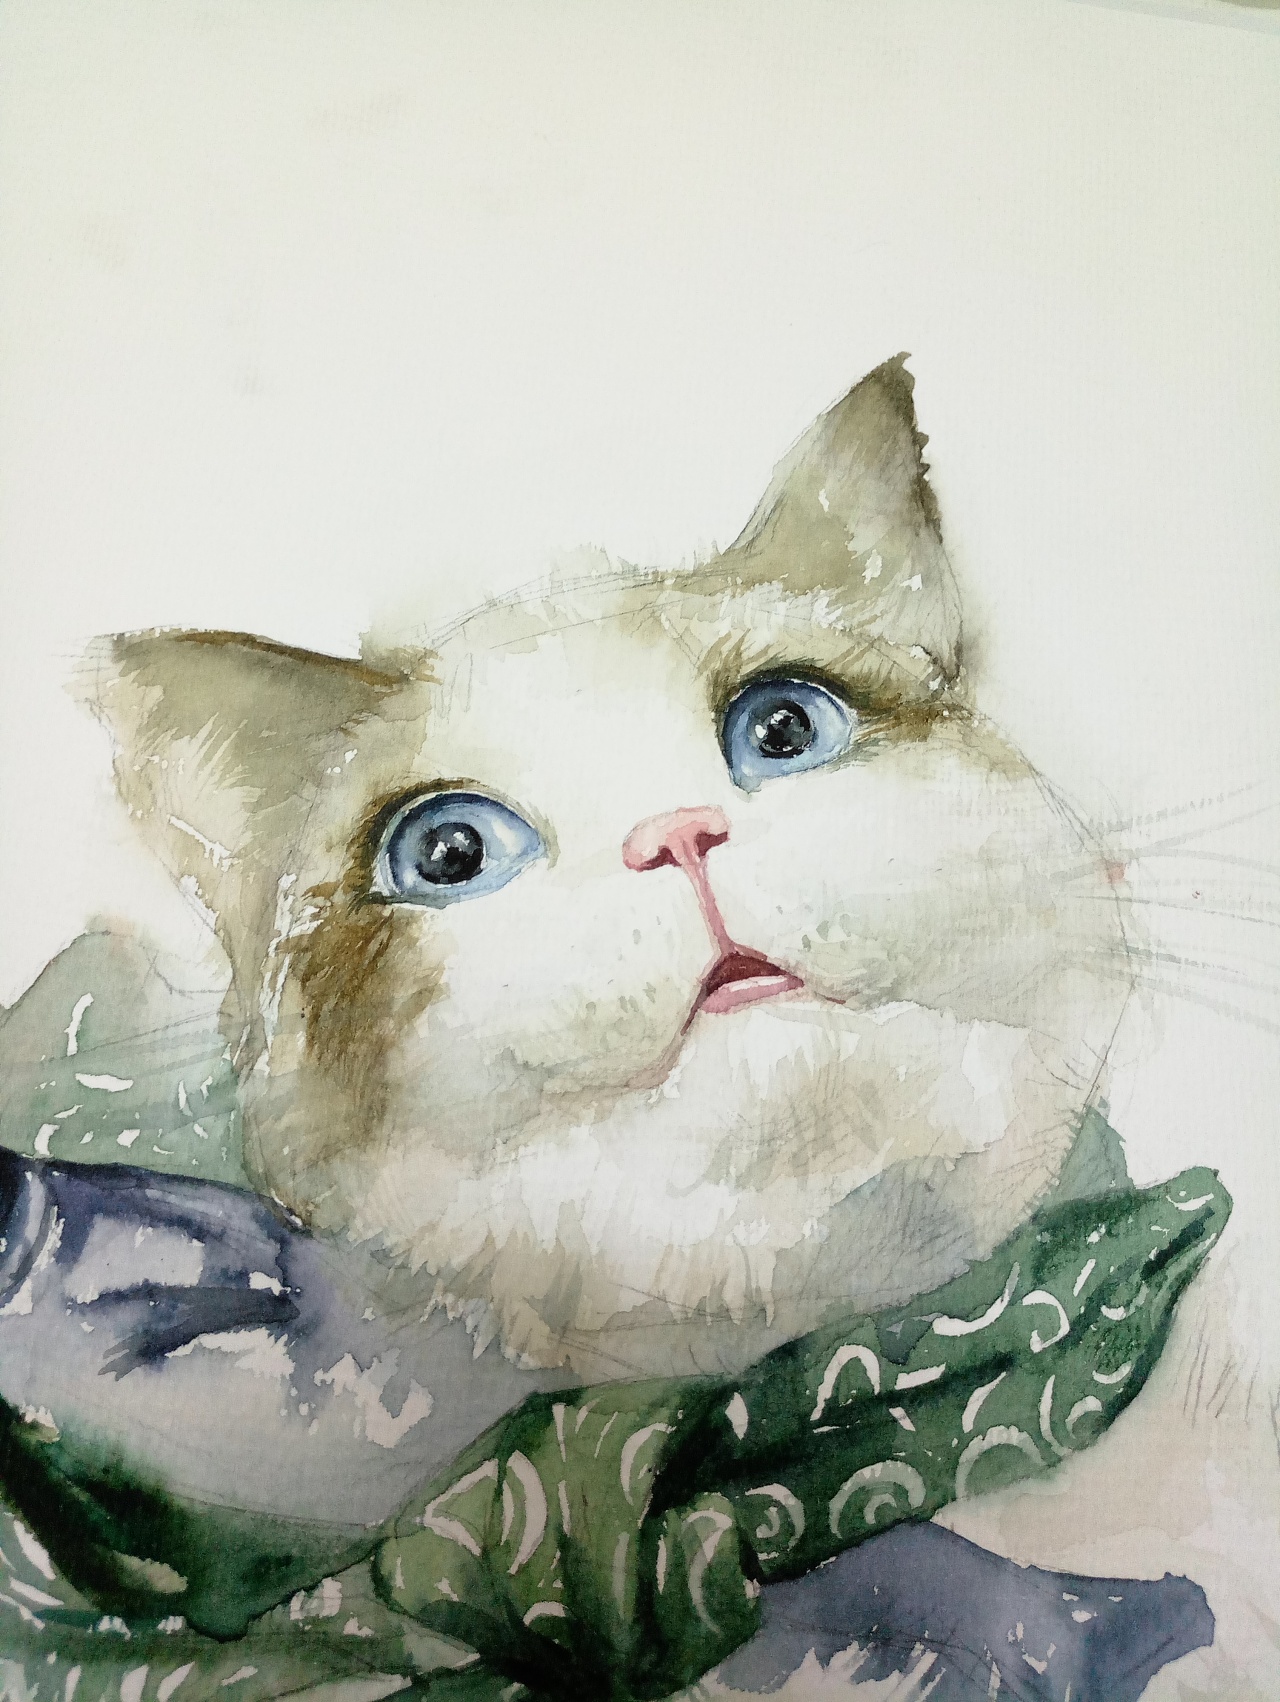 手绘猫咪可爱 - 堆糖，美图壁纸兴趣社区